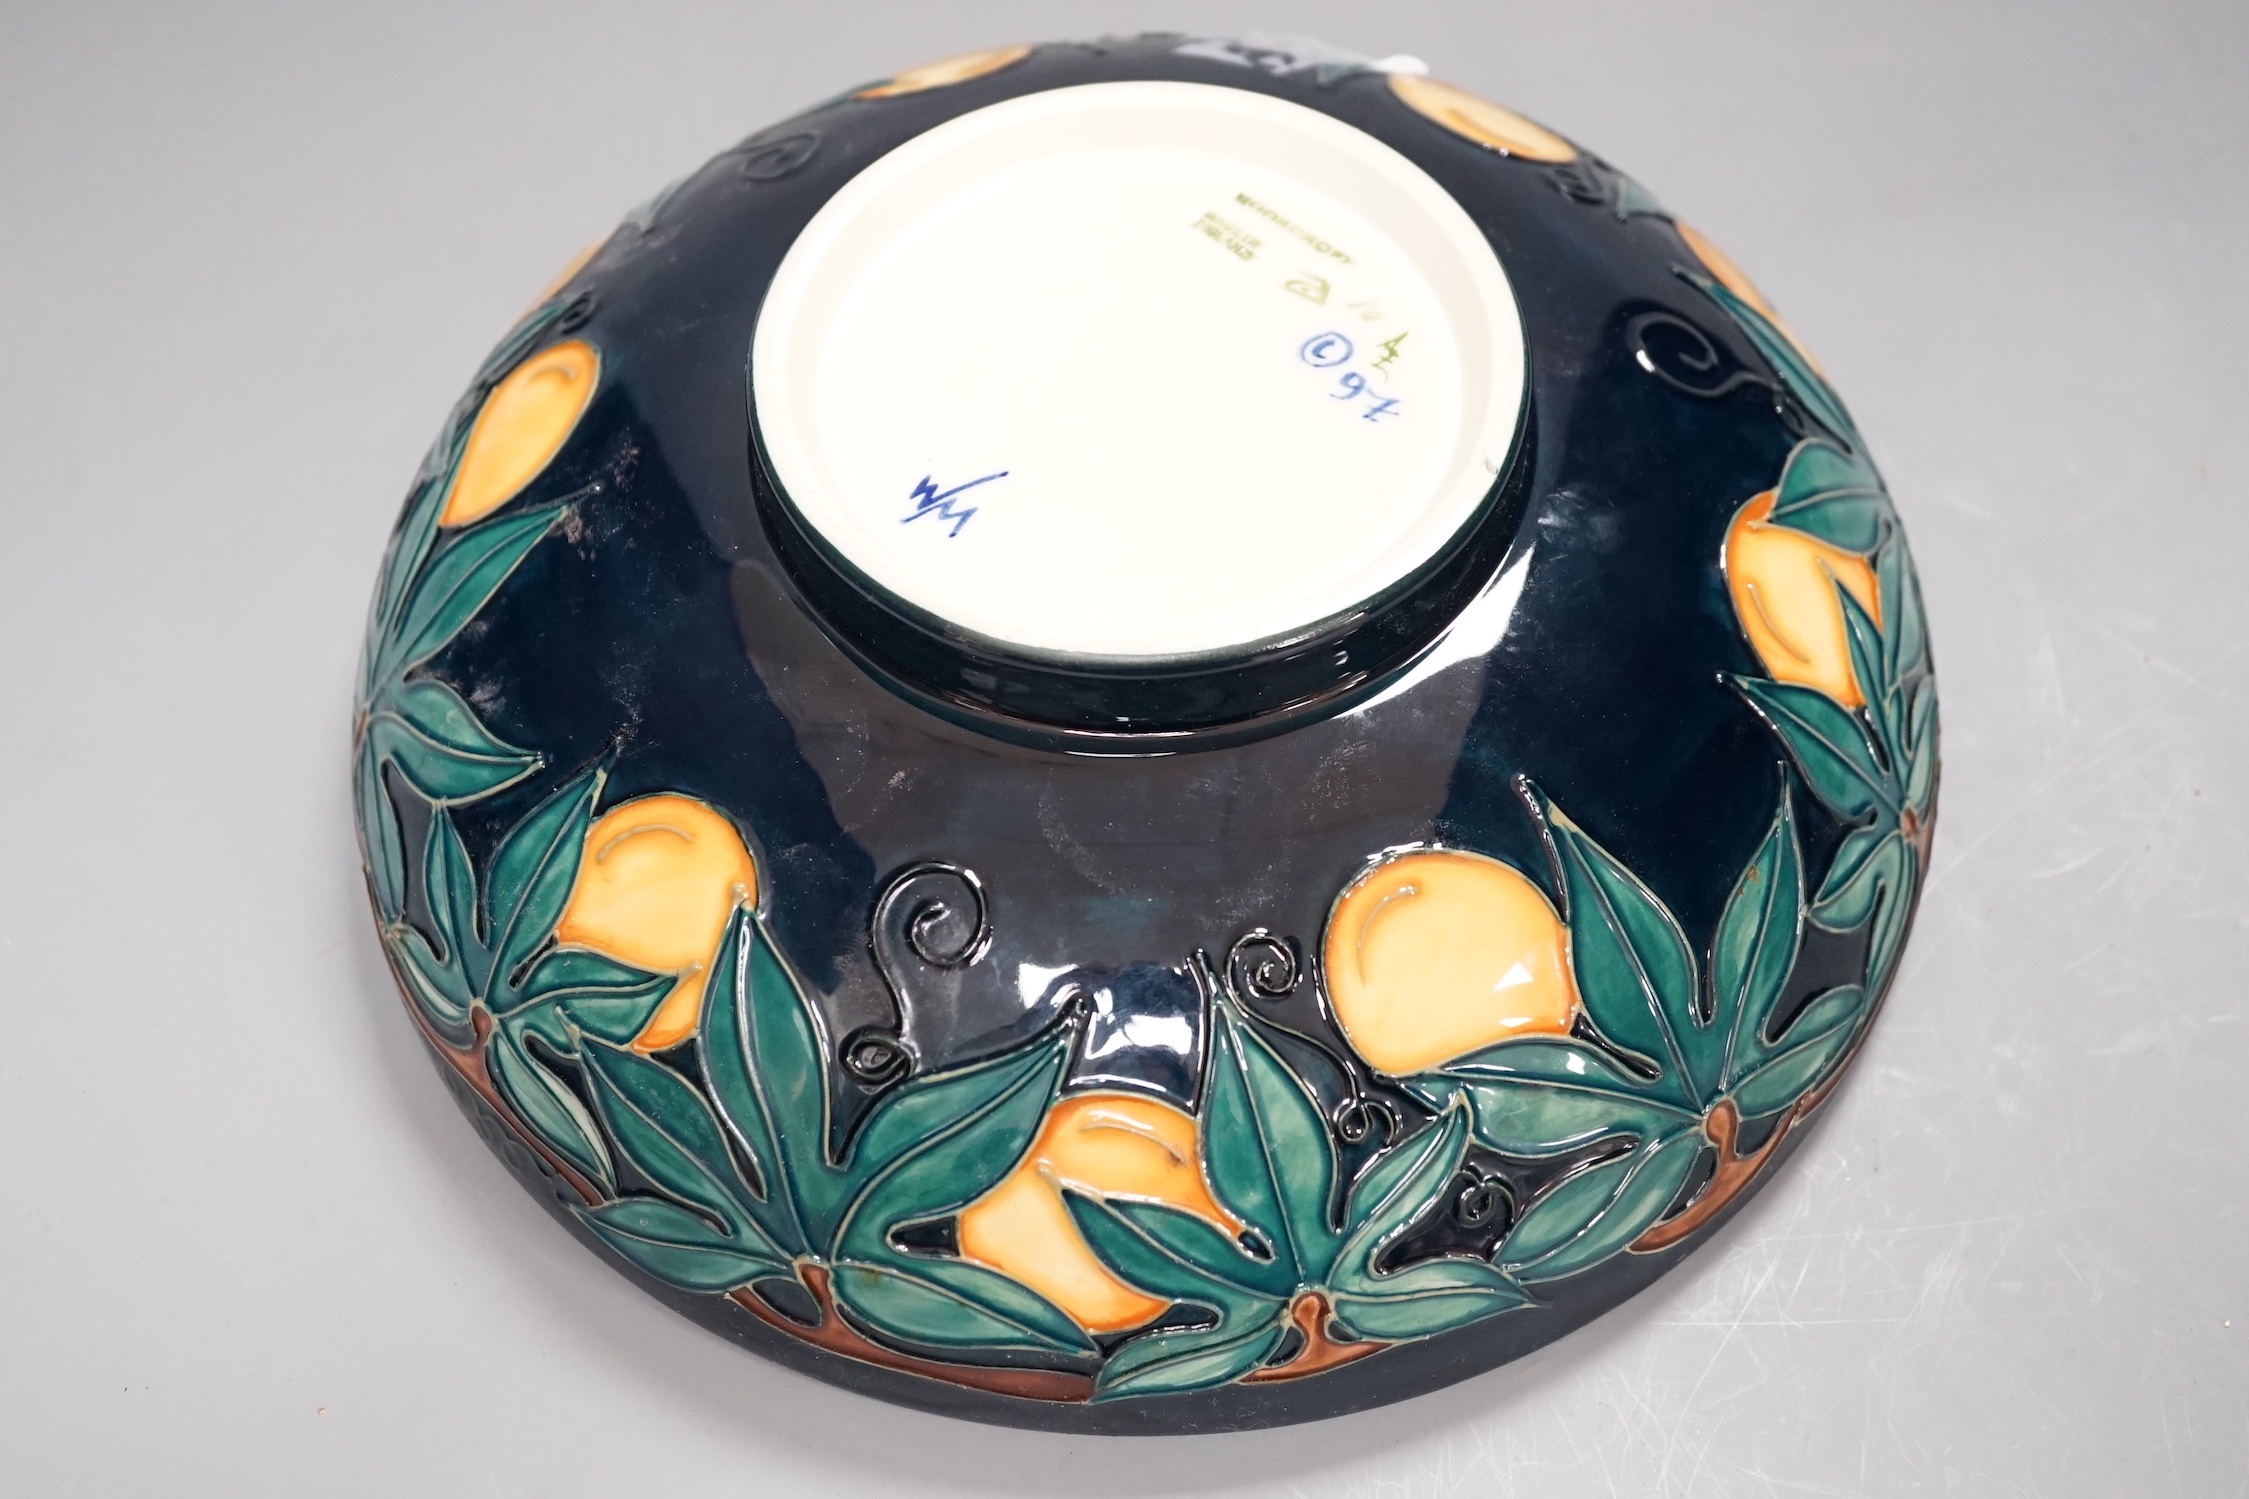 A Moorcroft Passion Flower fruit bowl - 26cm wide